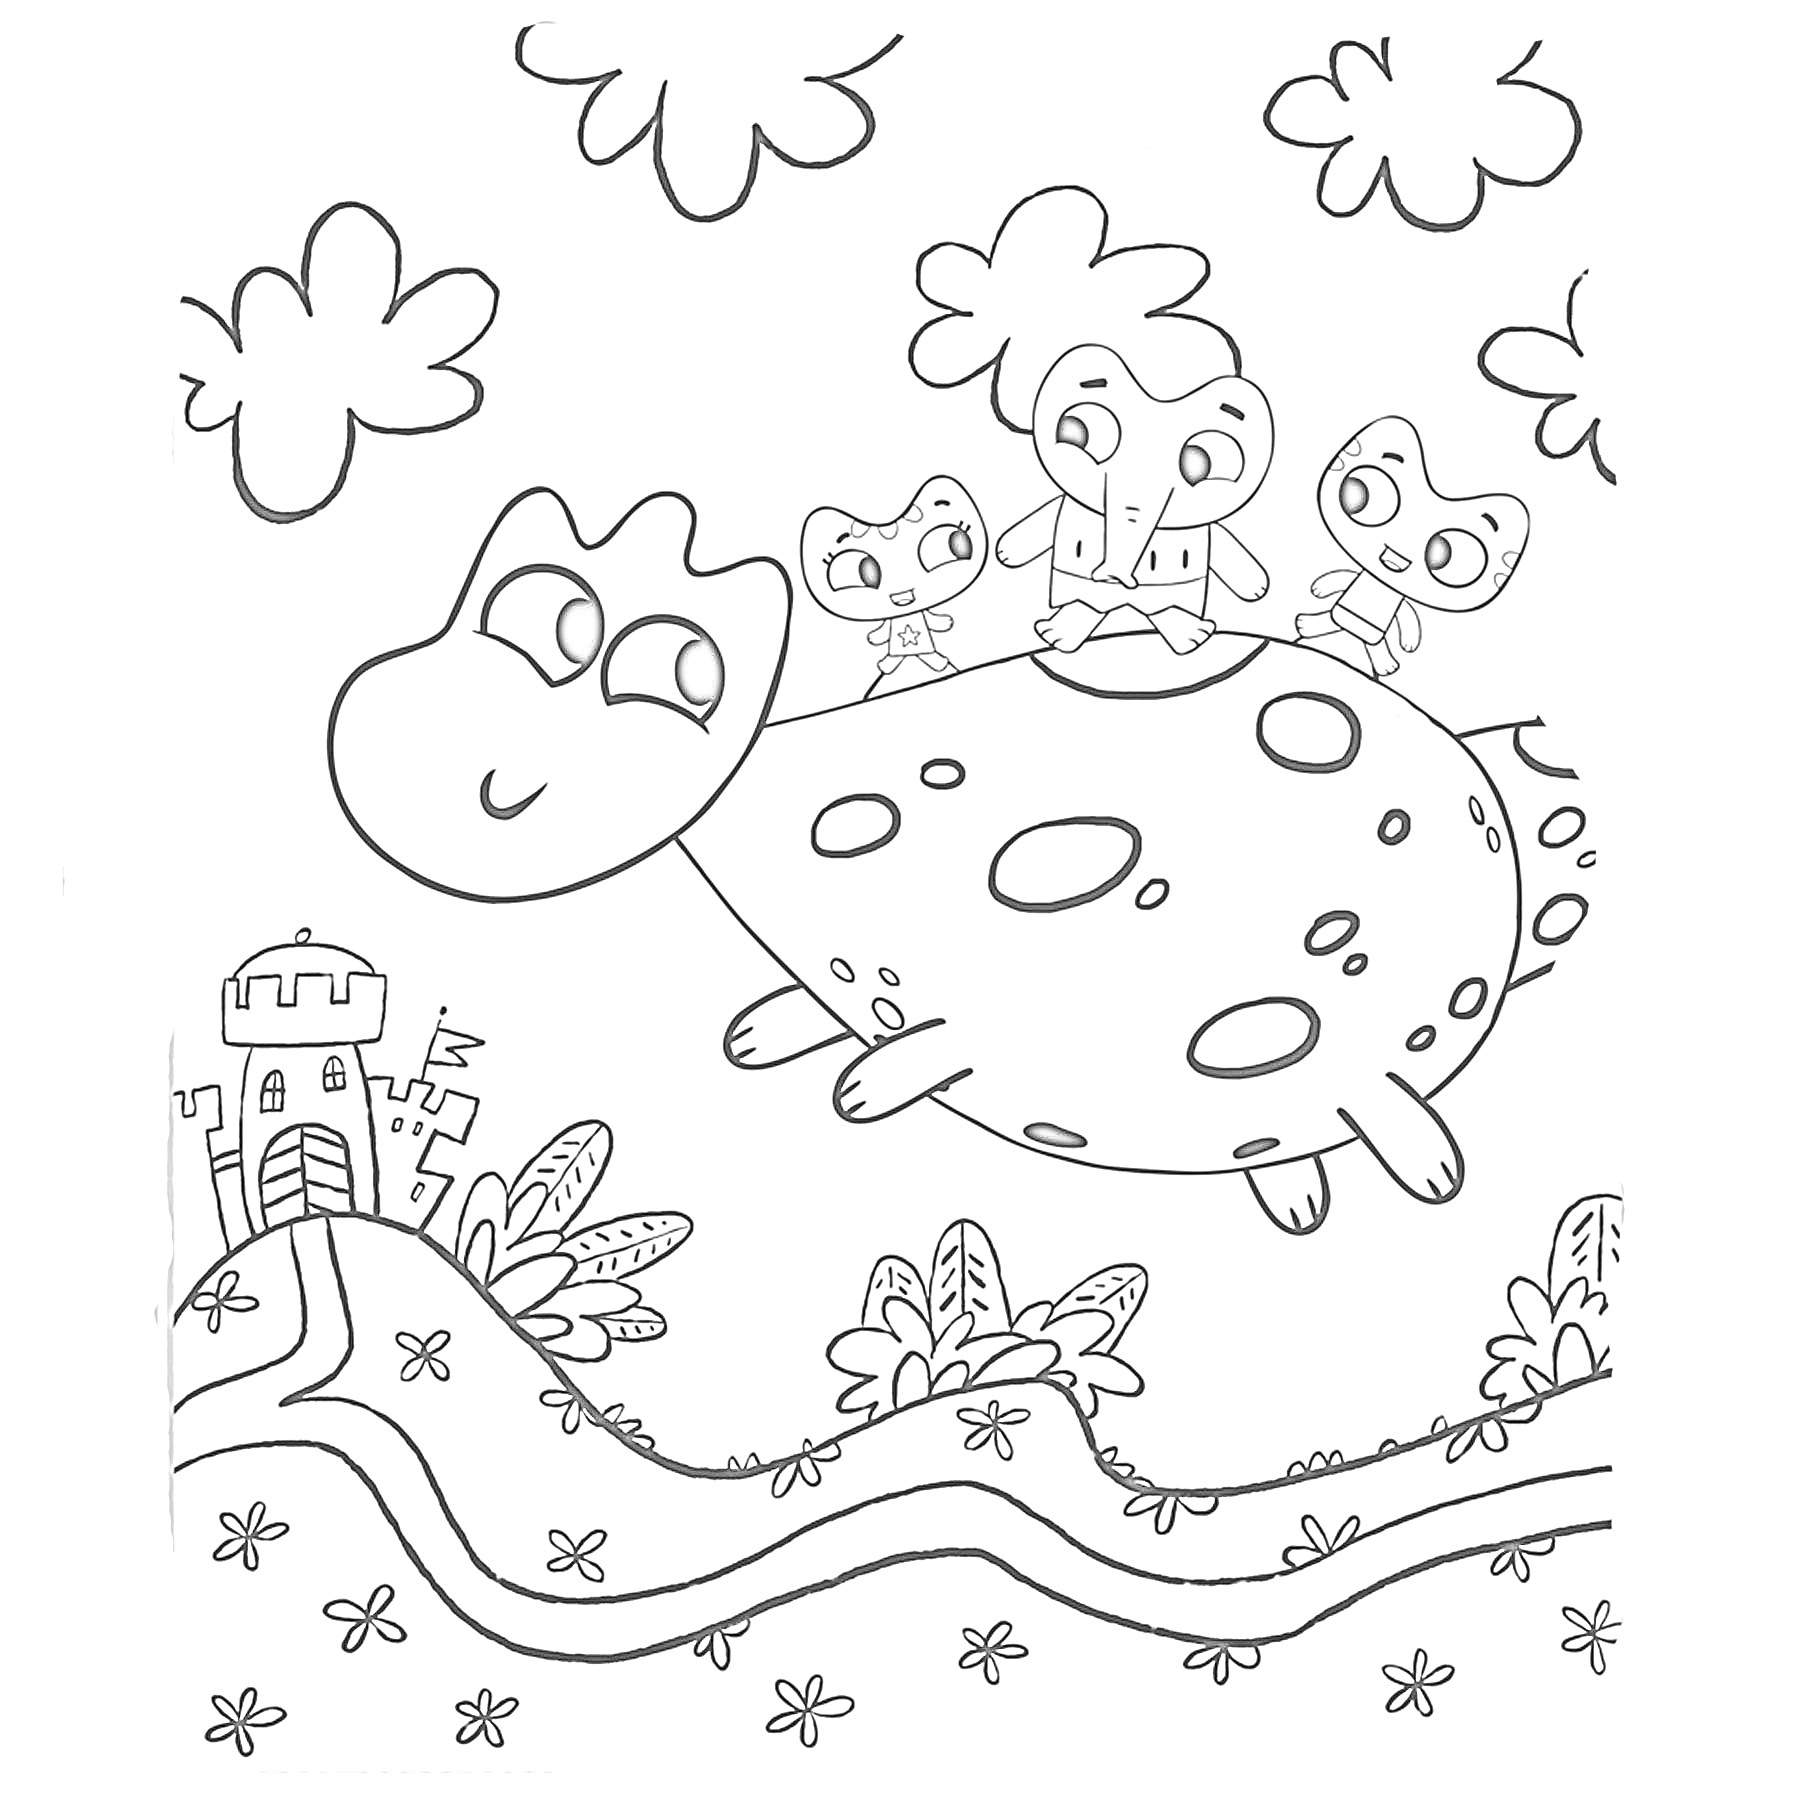 Котики на спине динозавра летят над полем с цветами и замком вдалеке